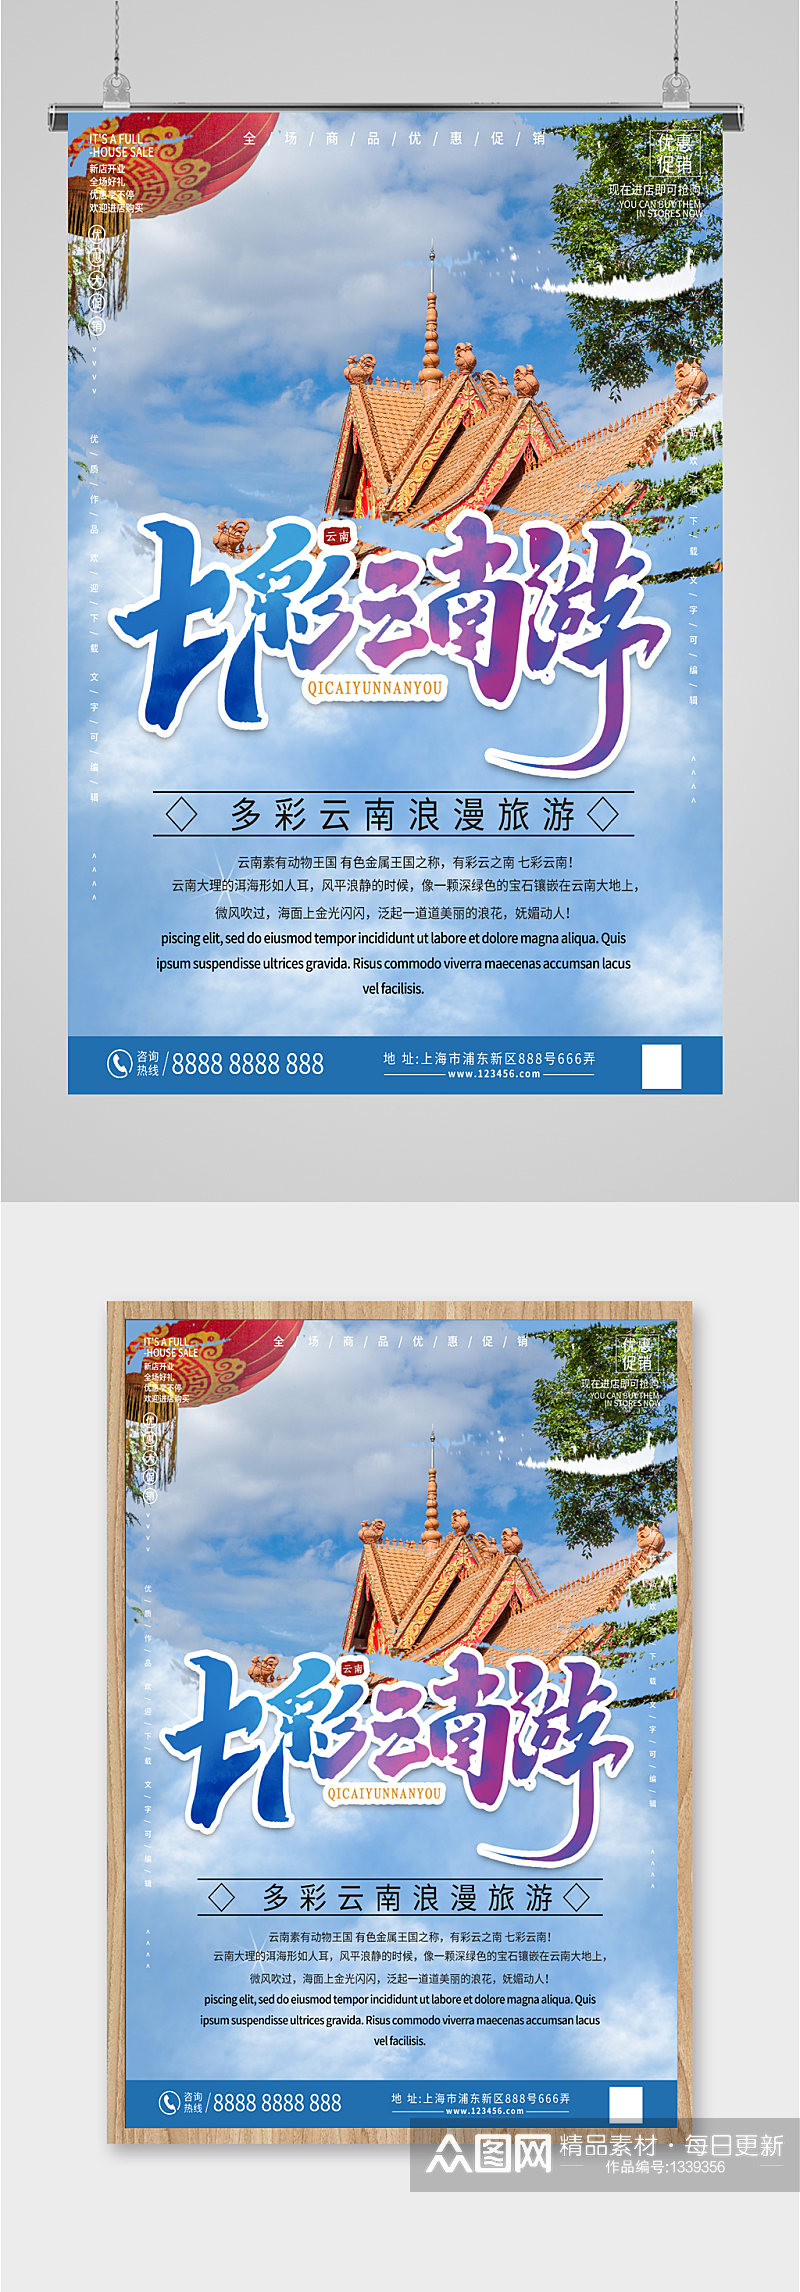 七彩云南旅游旅行社海报素材